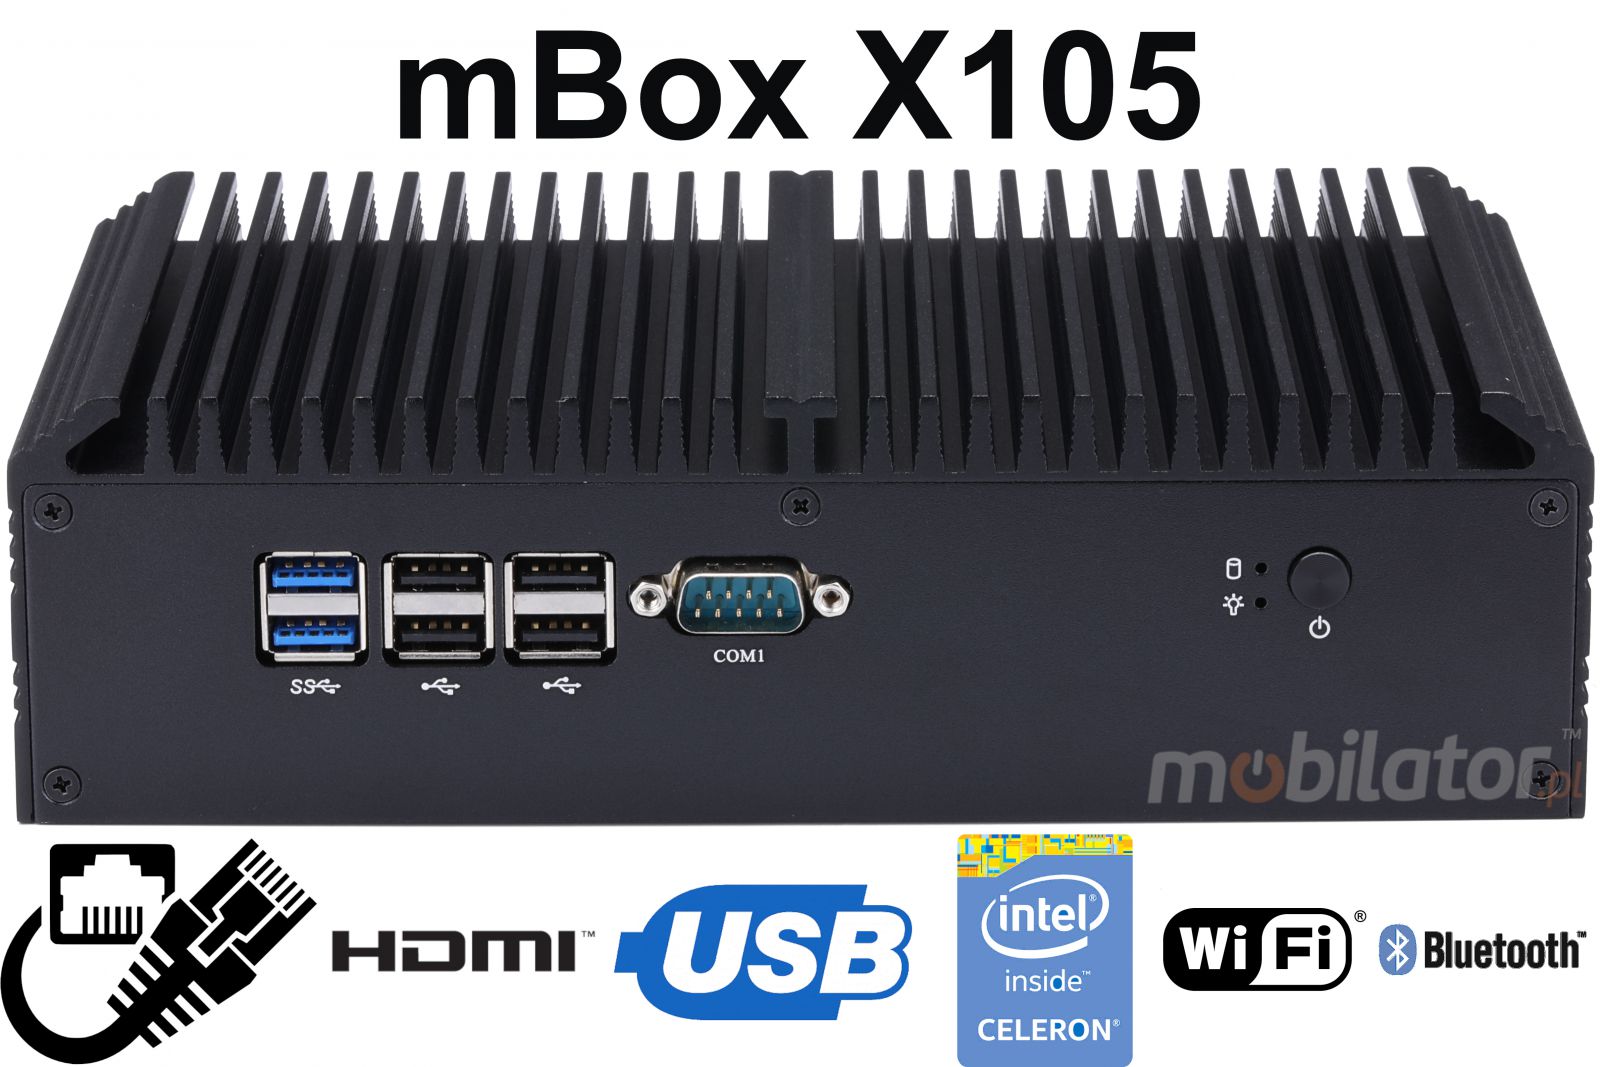 mBox X105 v.5 - Mini PC z dyskiem HDD o pojemnoci 500GB z Wifi + Bluetooth, z 4-roma portami USB 3.0 (6x RS-232) - Obrazek tytuowy